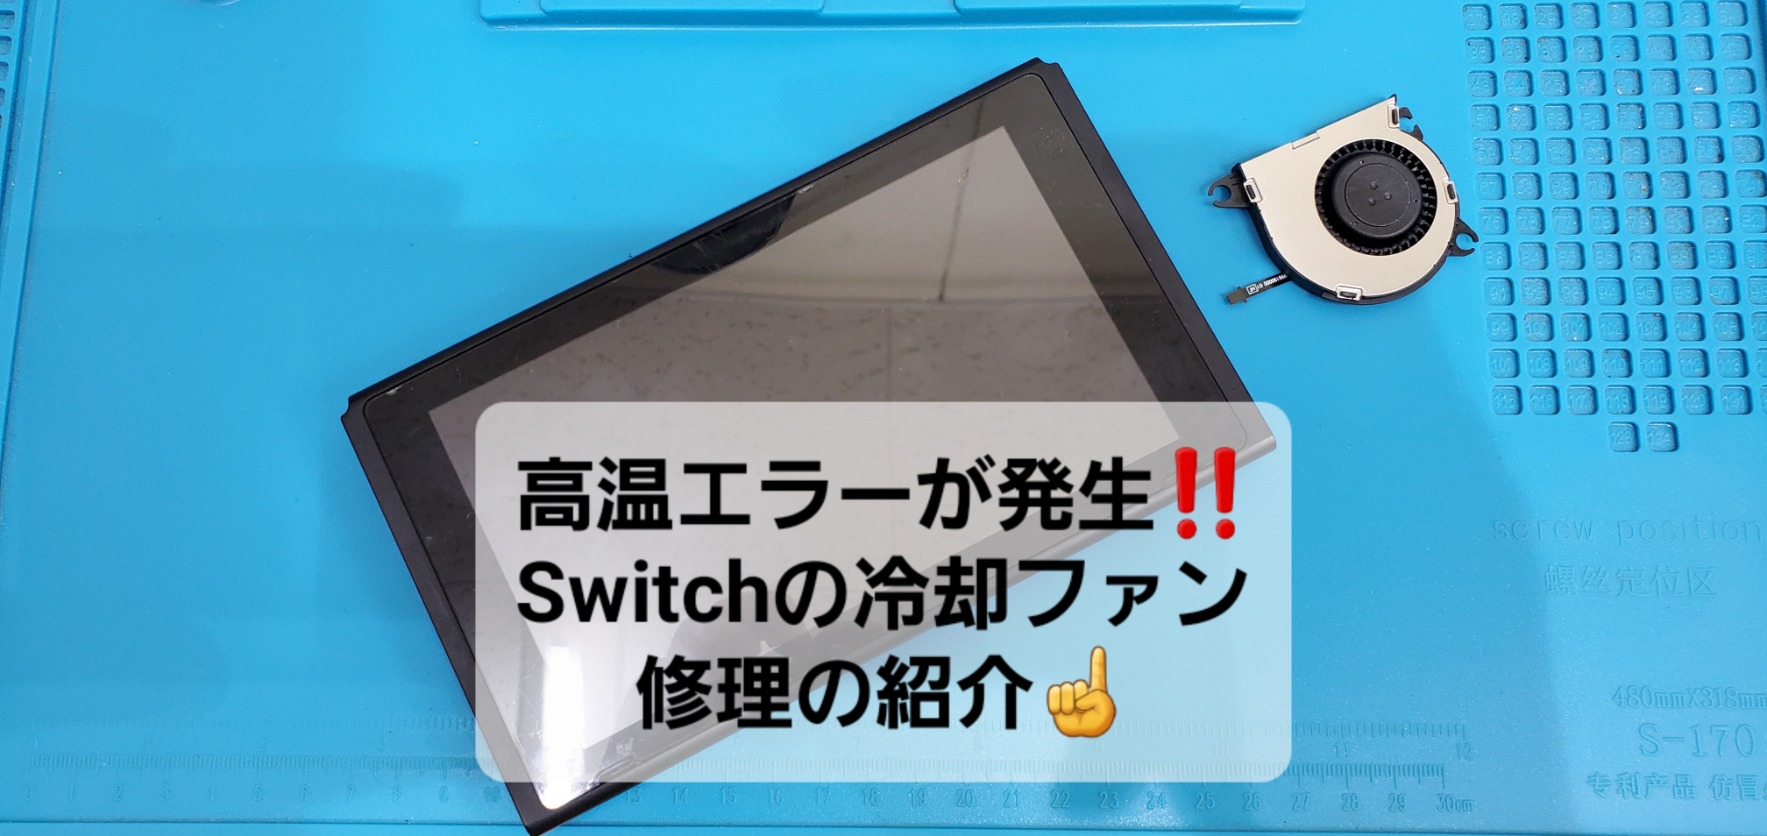 安城市よりご来店、Nintendo Switch冷却ファン交換のご紹介。|安城駅徒歩3分|iPhone・Switch・iPad修理ならアロウズリペア安城がおすすめ！JR安城駅から徒歩3分、データそのまま即日修理、Switch修理もお任せ下さい。お客様のお悩み解決致します。